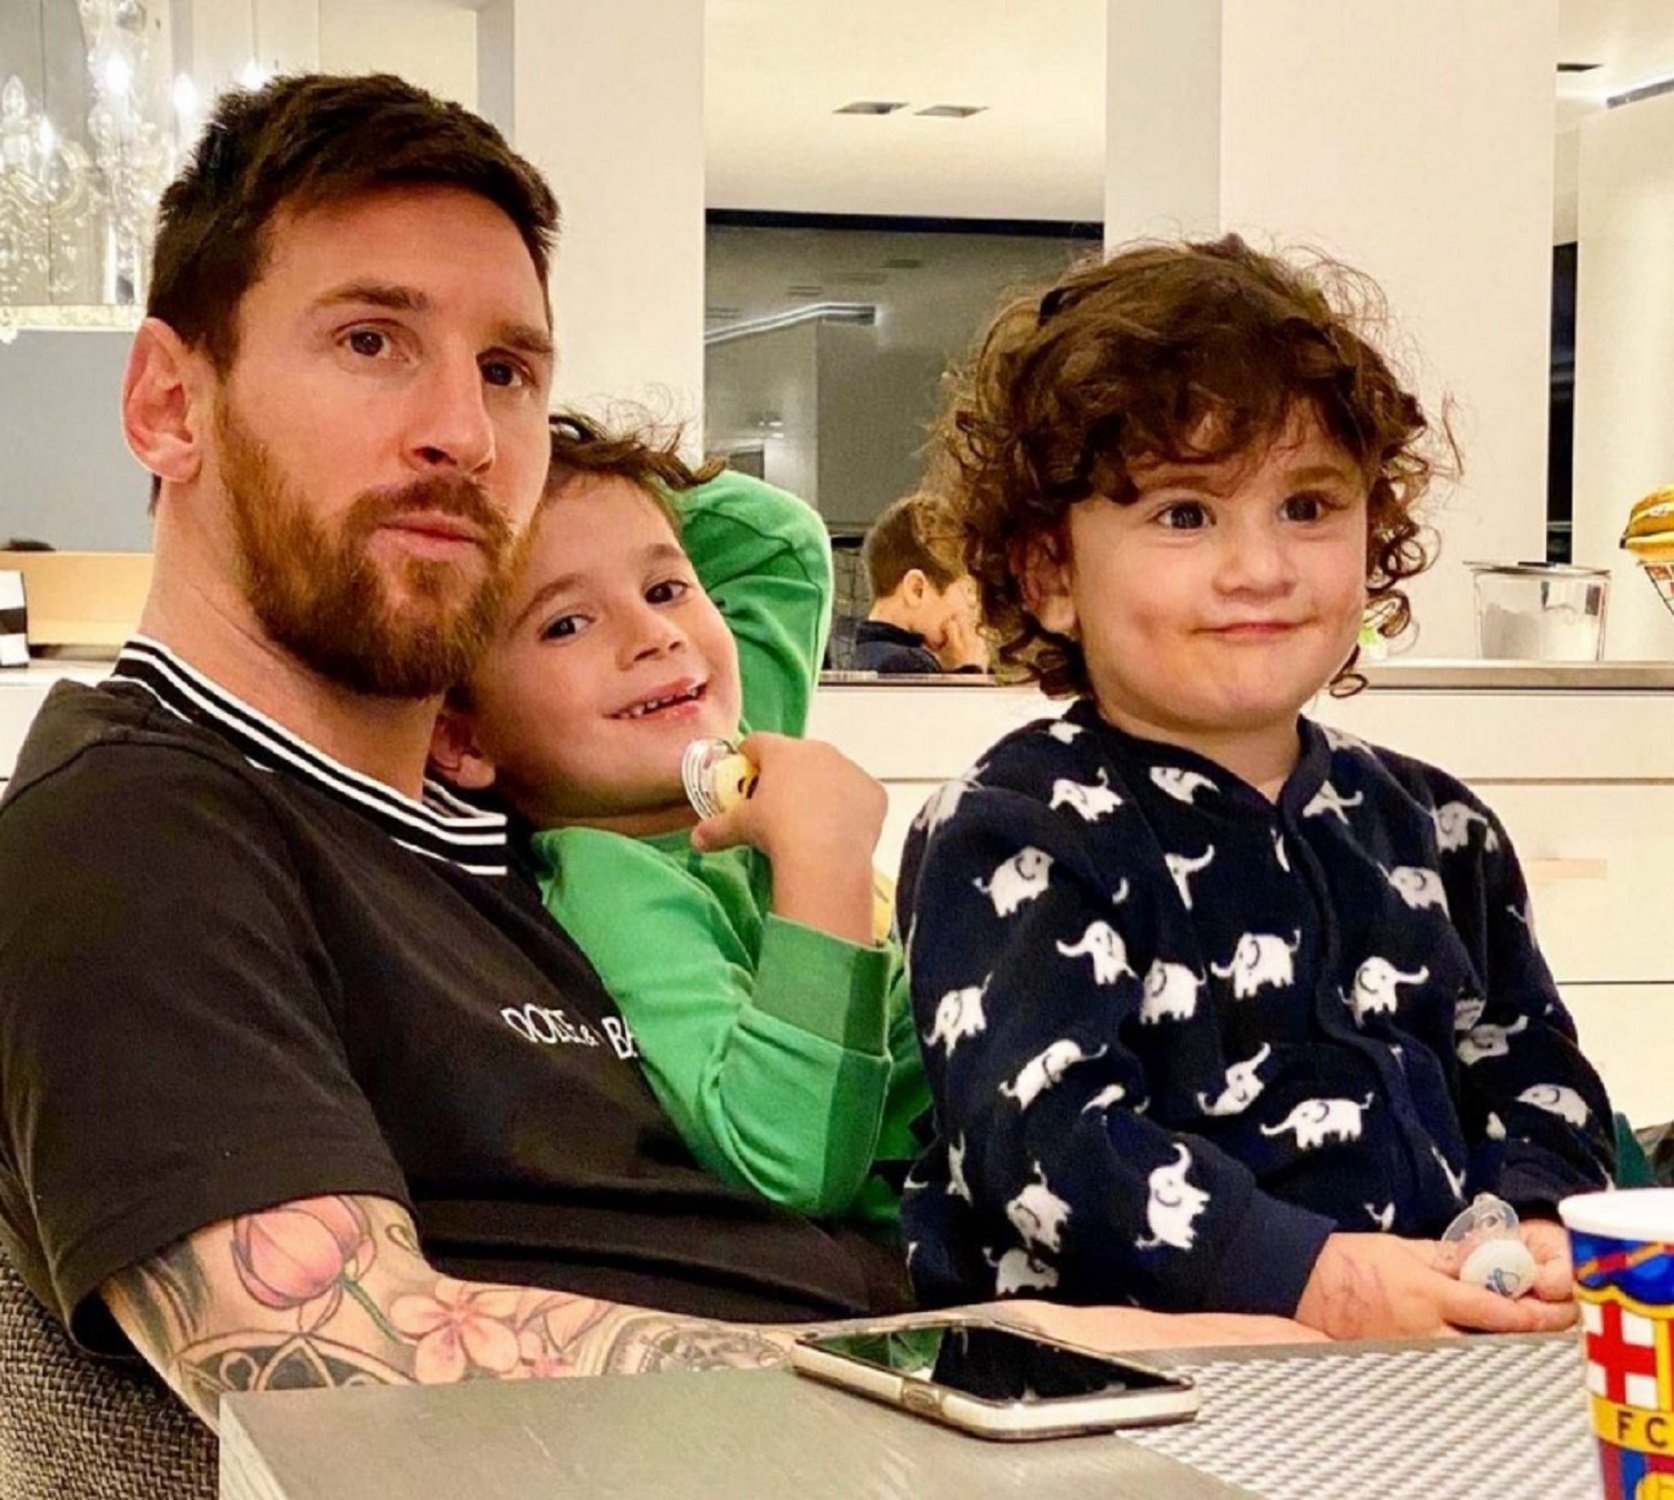 Tots els secrets de l'entrevista d'Évole a Messi